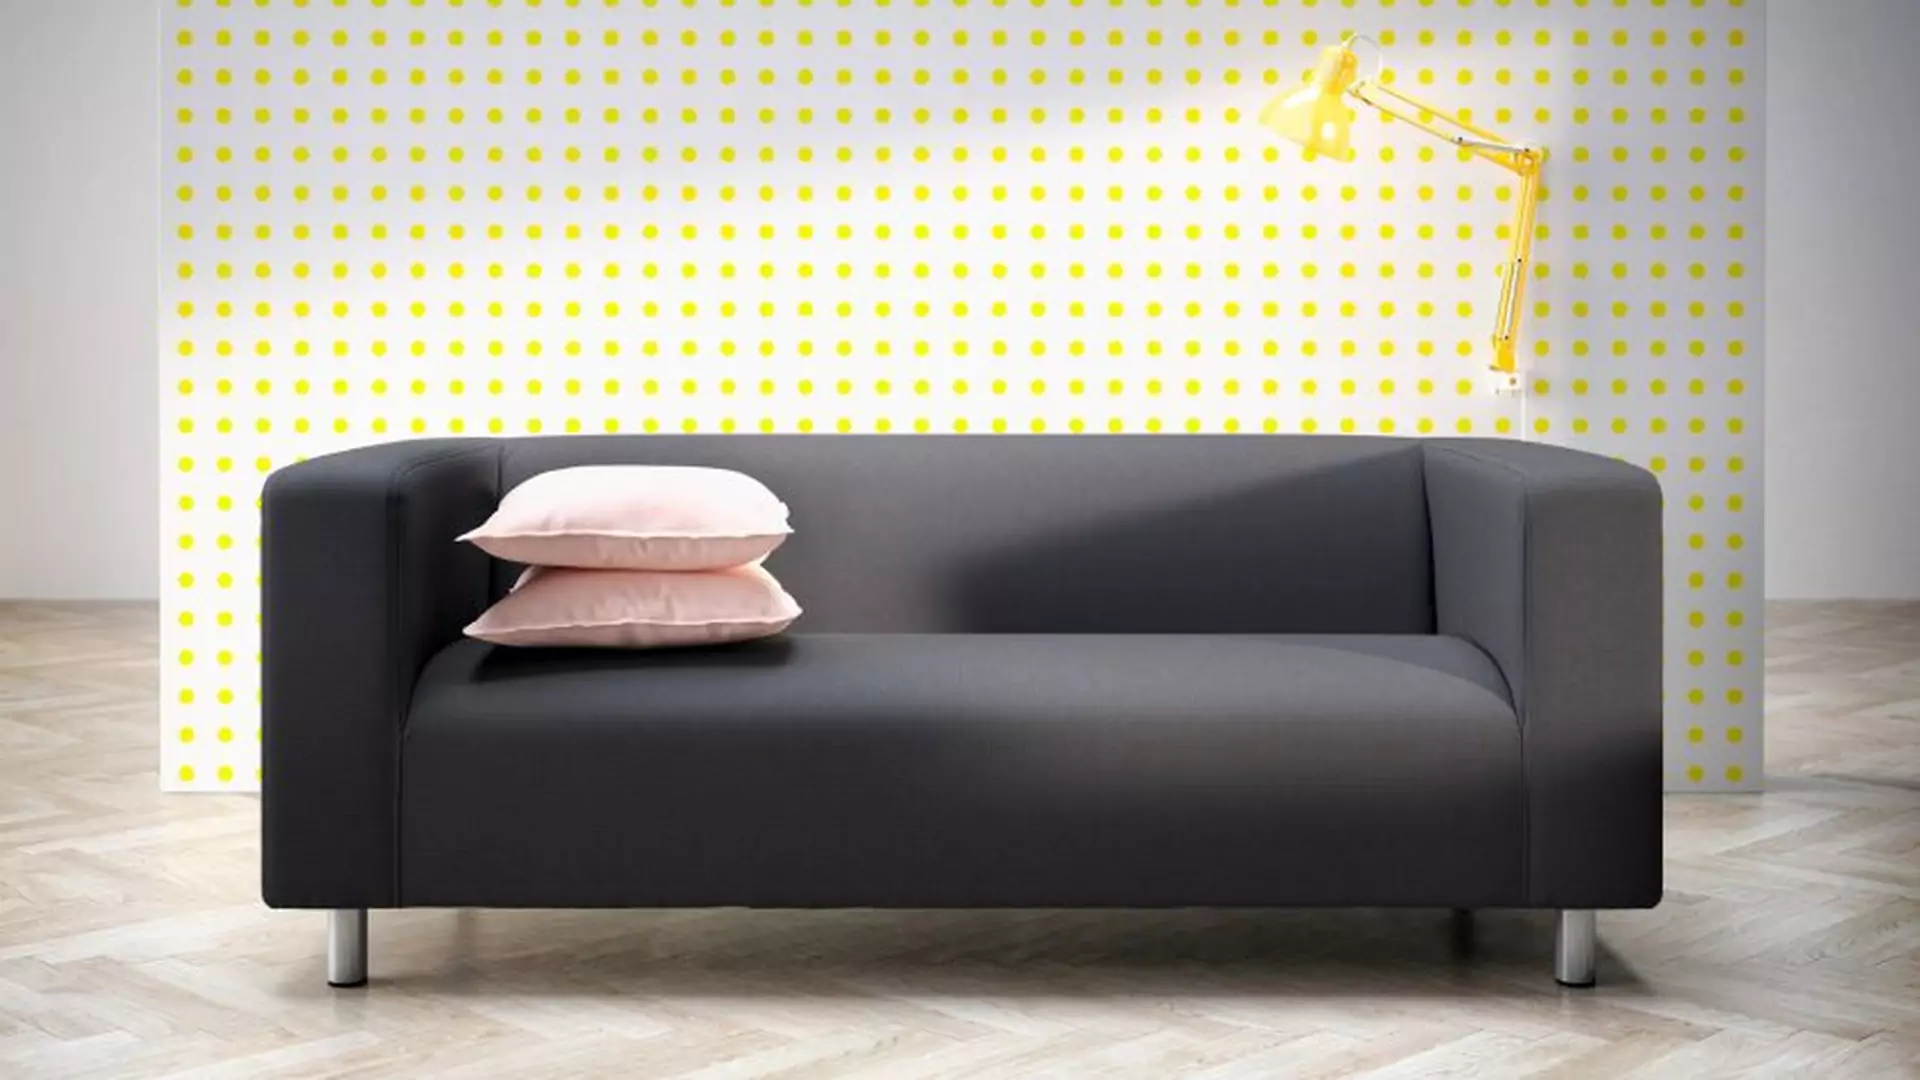 IKEA pozwala stworzyć kanapę marzeń. W nowym kreatorze nie obowiązują żadne zasady